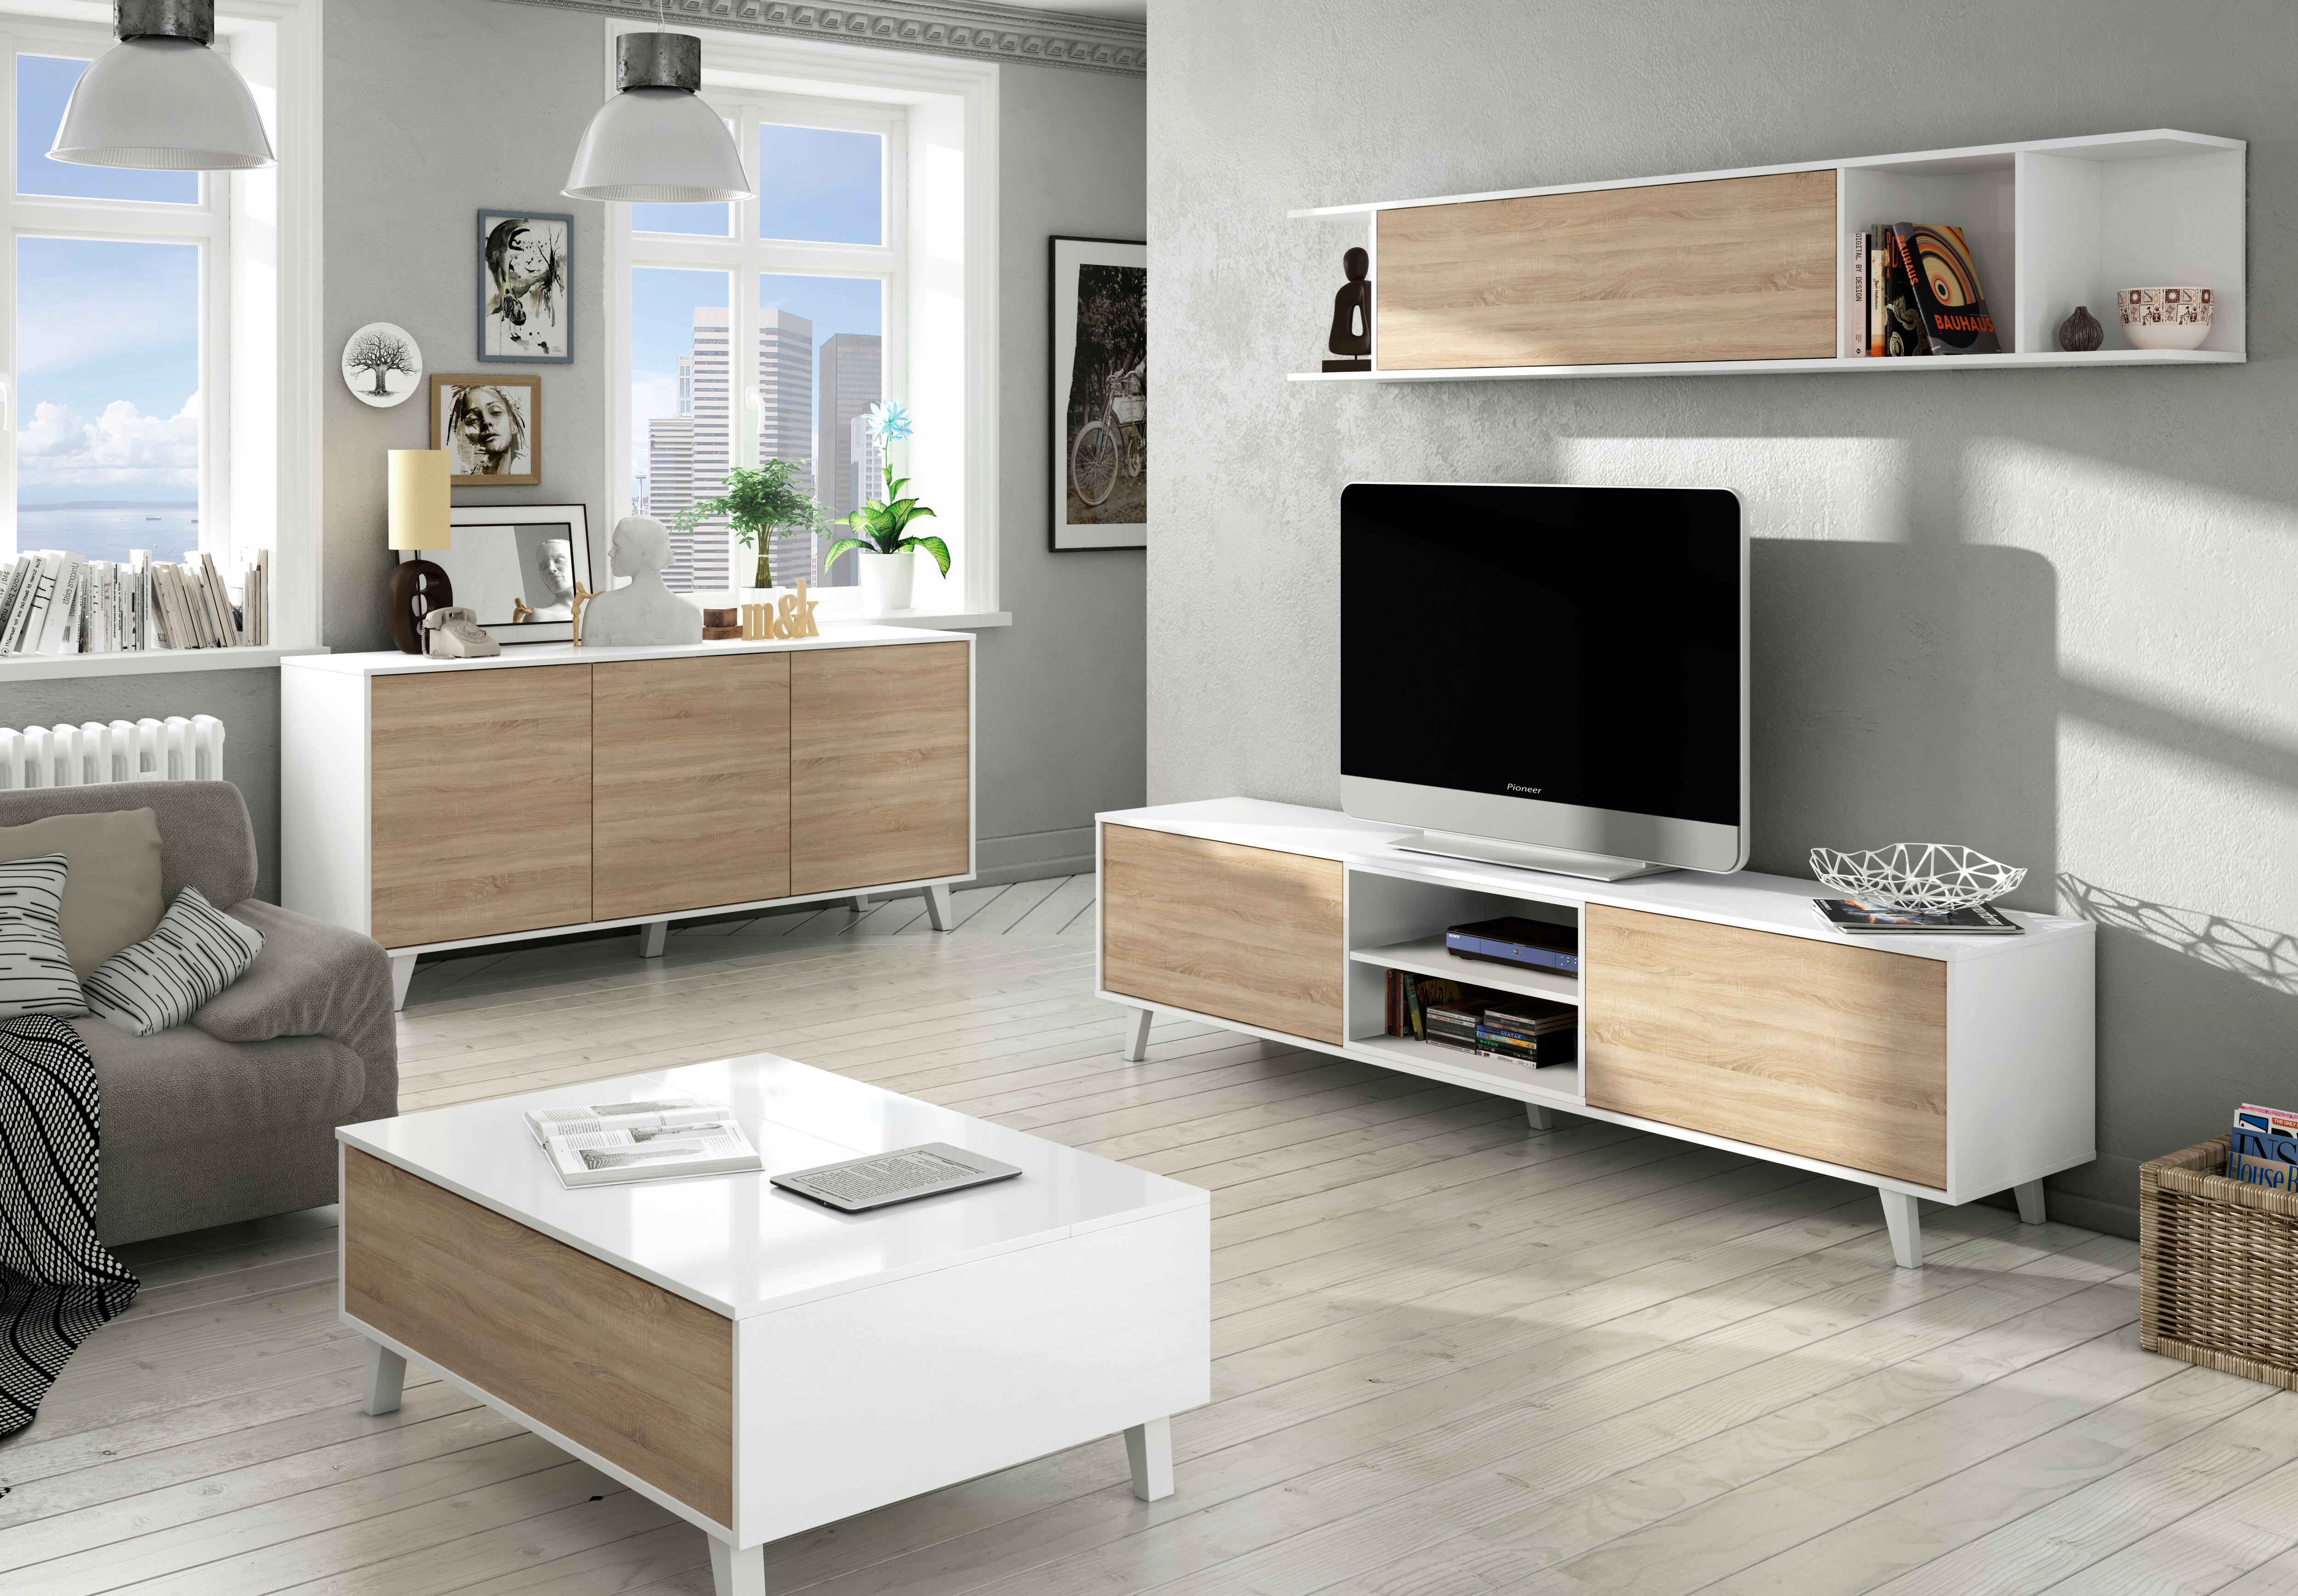 envidia frío ciclo Conjuntos de mueble de salón (Mueble TV + muebles auxiliares) | Leroy Merlin